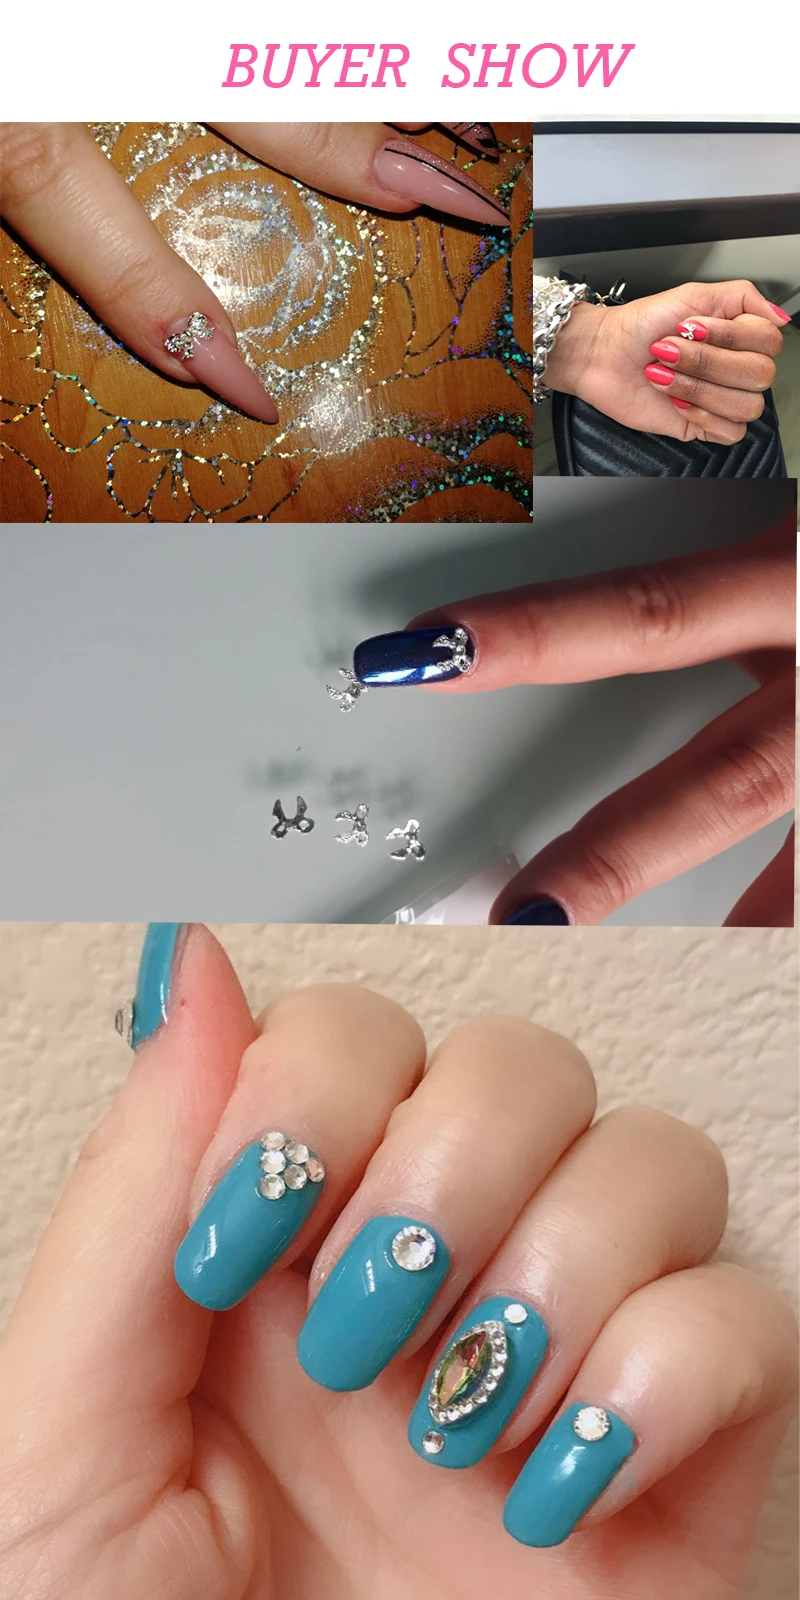 LEAMX 10 шт./пакет 3D Корона украшения для ногтей серебряные металлические амулеты сияющие стразы украшения для ногтей Аксессуары для маникюра ногтей L527